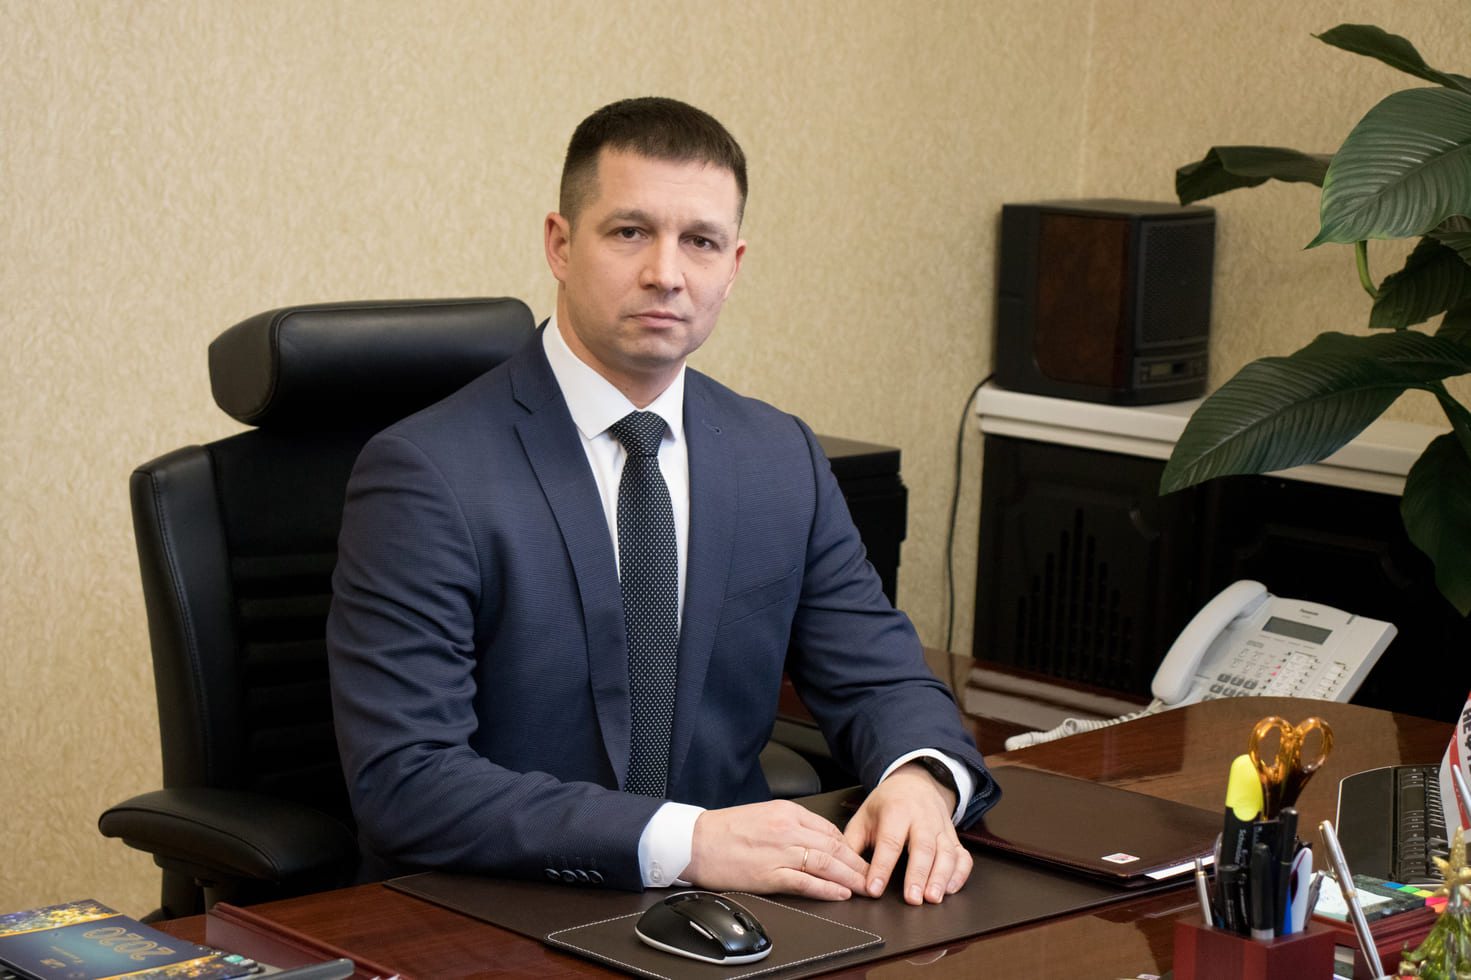 Юрий Григорьевич Орлов - управляющий директор завода АО «ГМС Нефтемаш» Тюмень